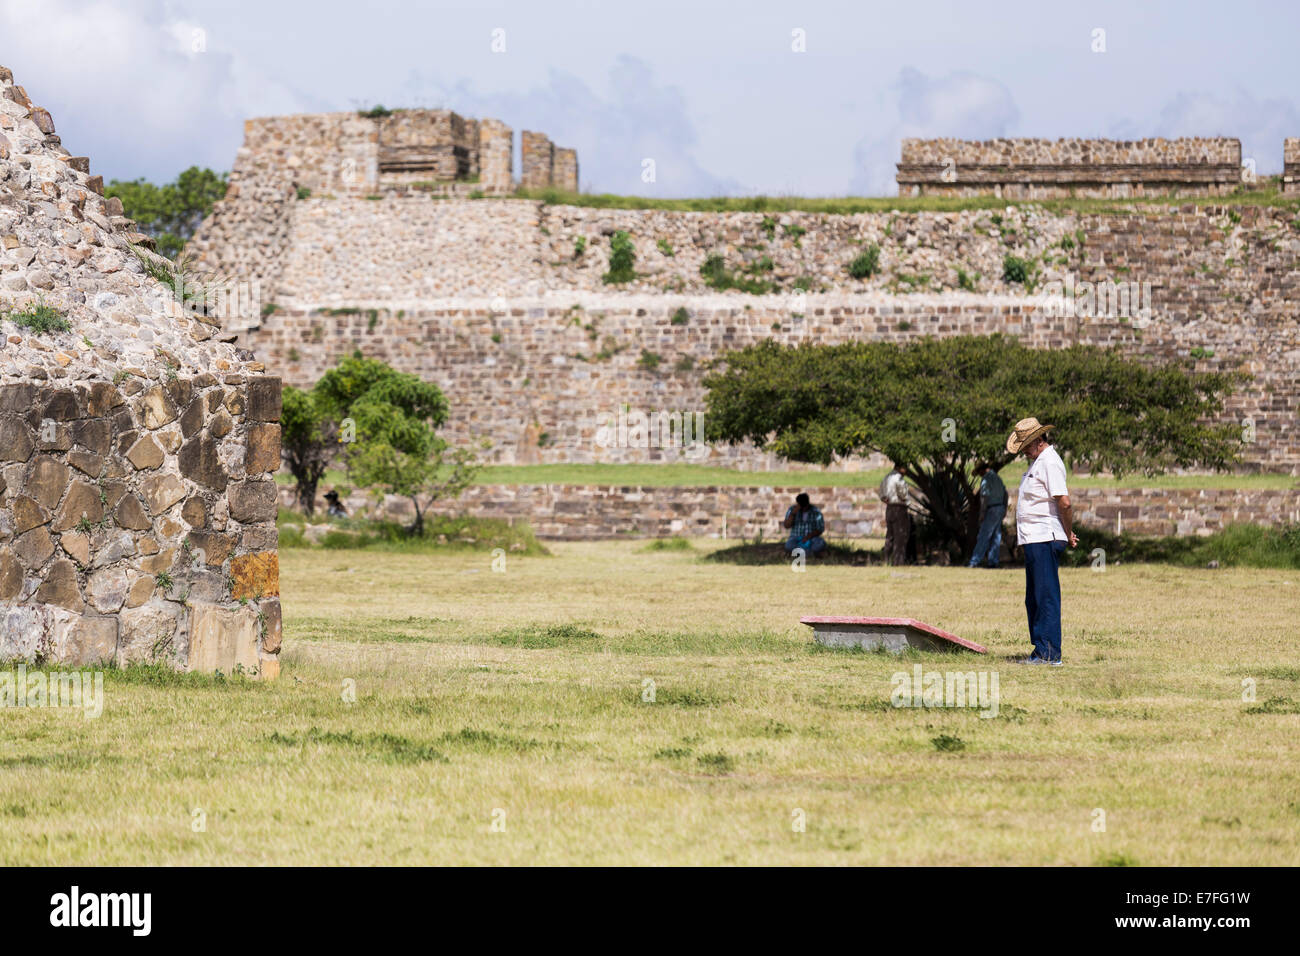 La lecture de l'homme une plaque du site archéologique de Monte Albán, Oaxaca, Mexique Banque D'Images